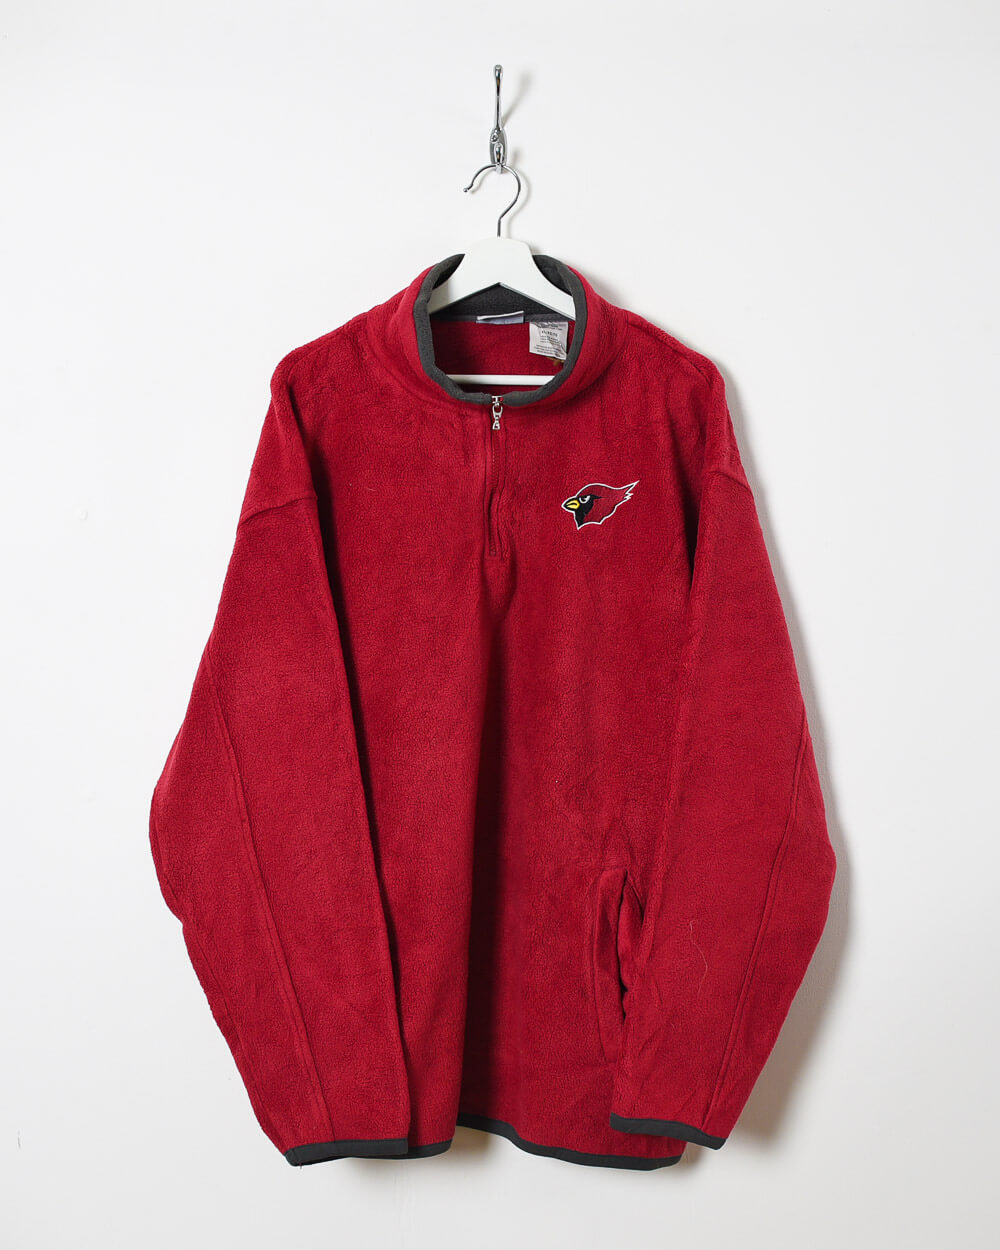 Maroon Reebok Cardinals 1/4 Zip Fleece - X-Large